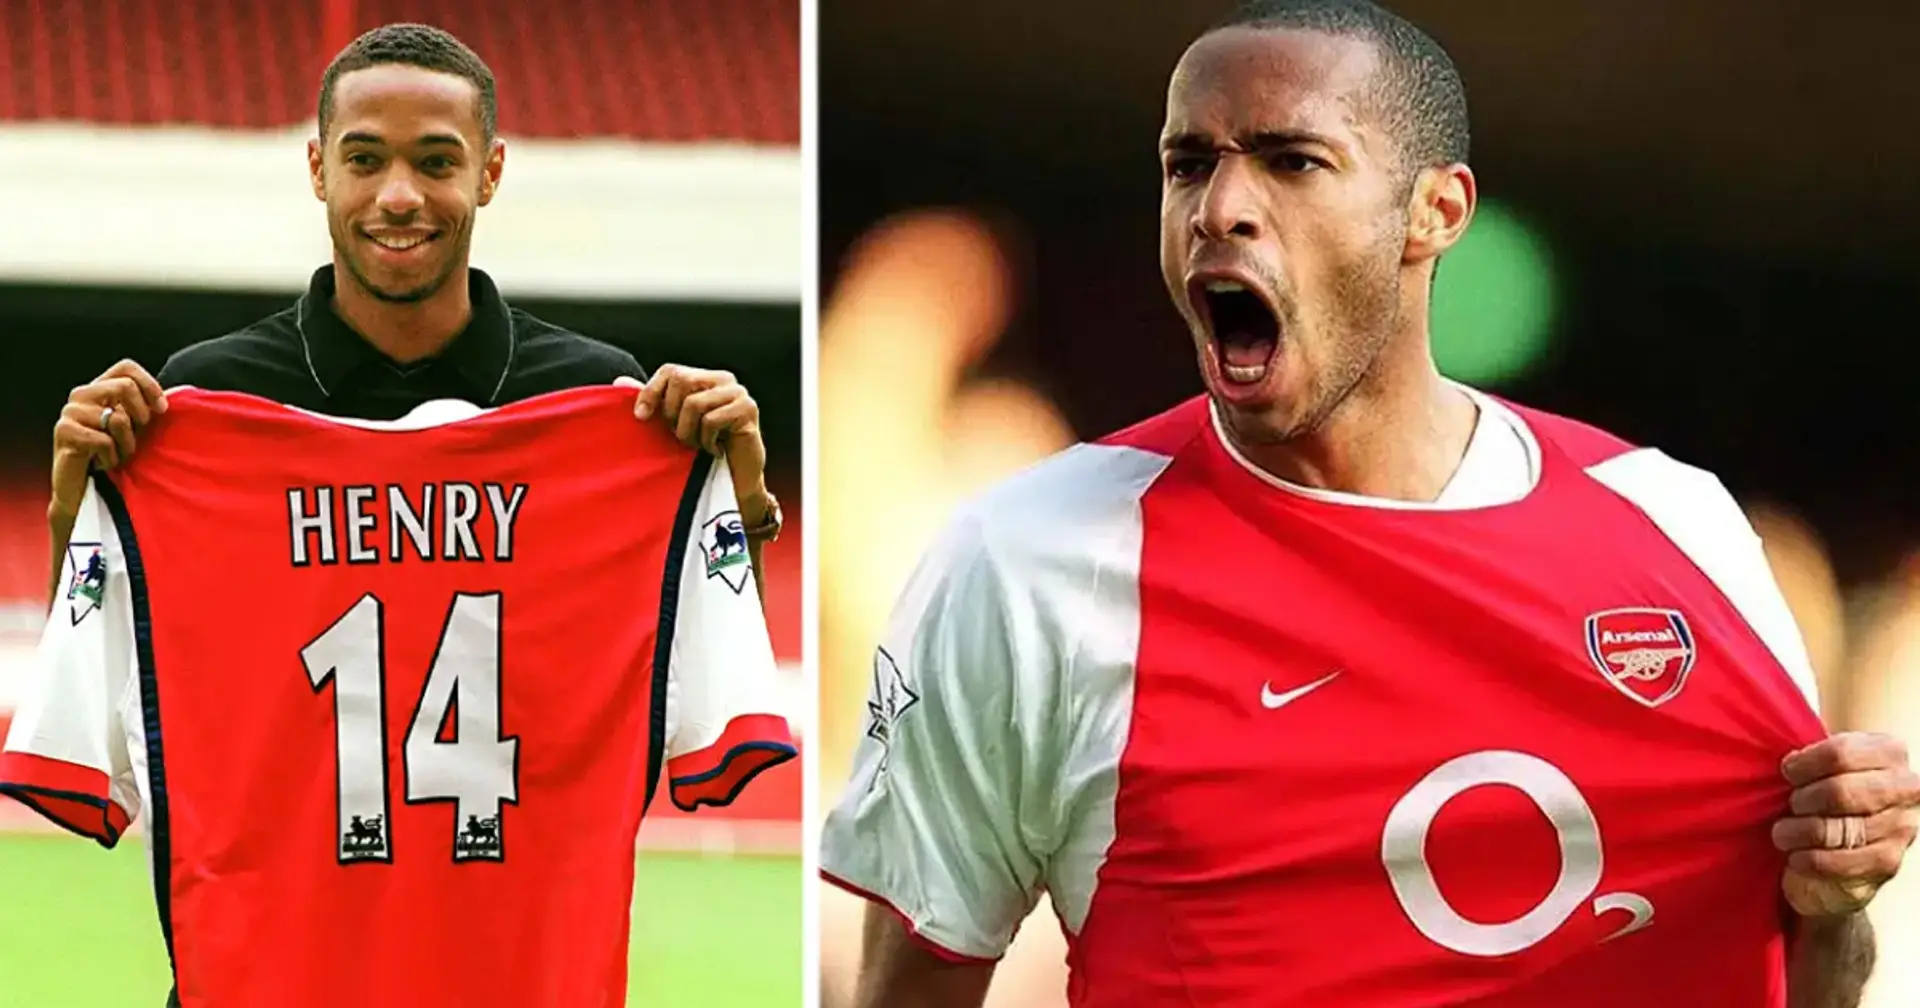 "14 ist nicht meine Nummer": Wir erklären, warum Henry bei Arsenal die Nr. 14 gewählt hat